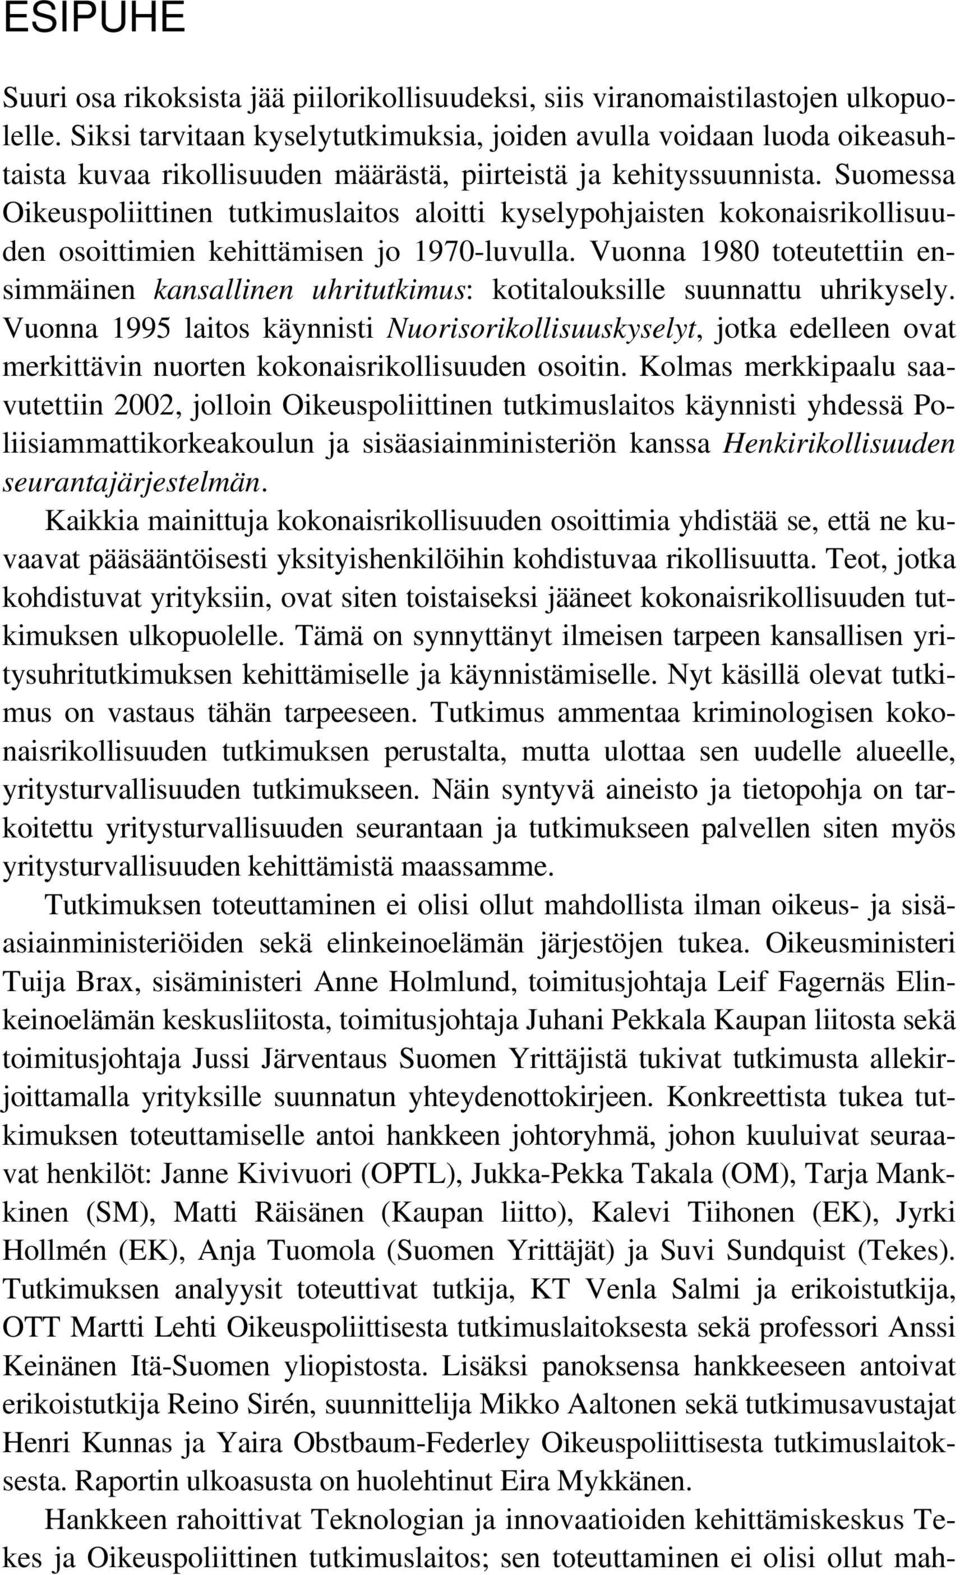 Suomessa Oikeuspoliittinen tutkimuslaitos aloitti kyselypohjaisten kokonaisrikollisuuden osoittimien kehittämisen jo 1970-luvulla.